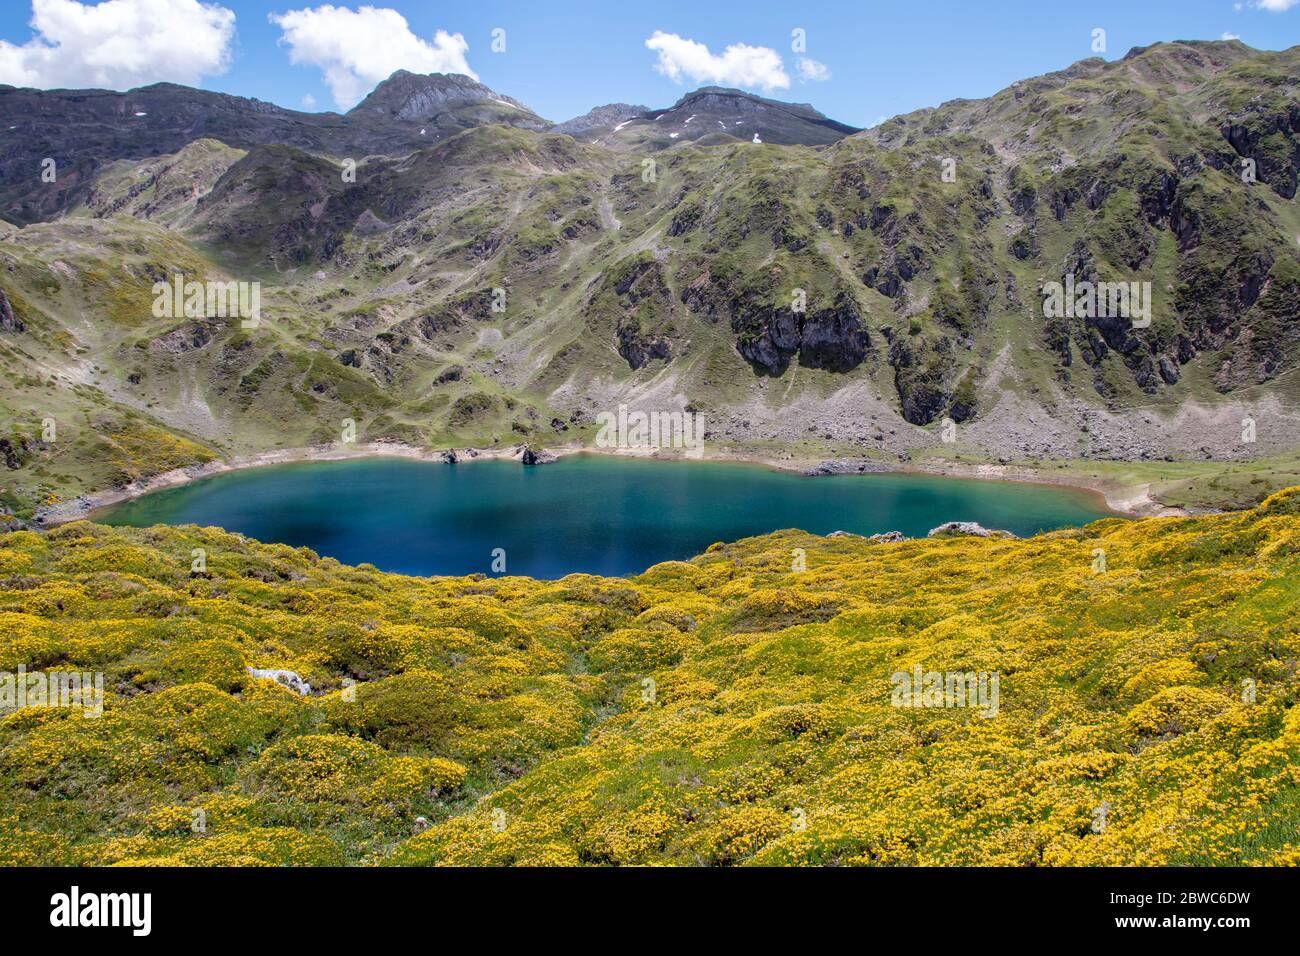 Incroyable eau bleue de Calabazosa ou lac Noir dans le parc national de Sexiedo, Espagne, Asturies. Lacs de montagne de Saliencia. Fleurs jaunes de printemps. Banque D'Images